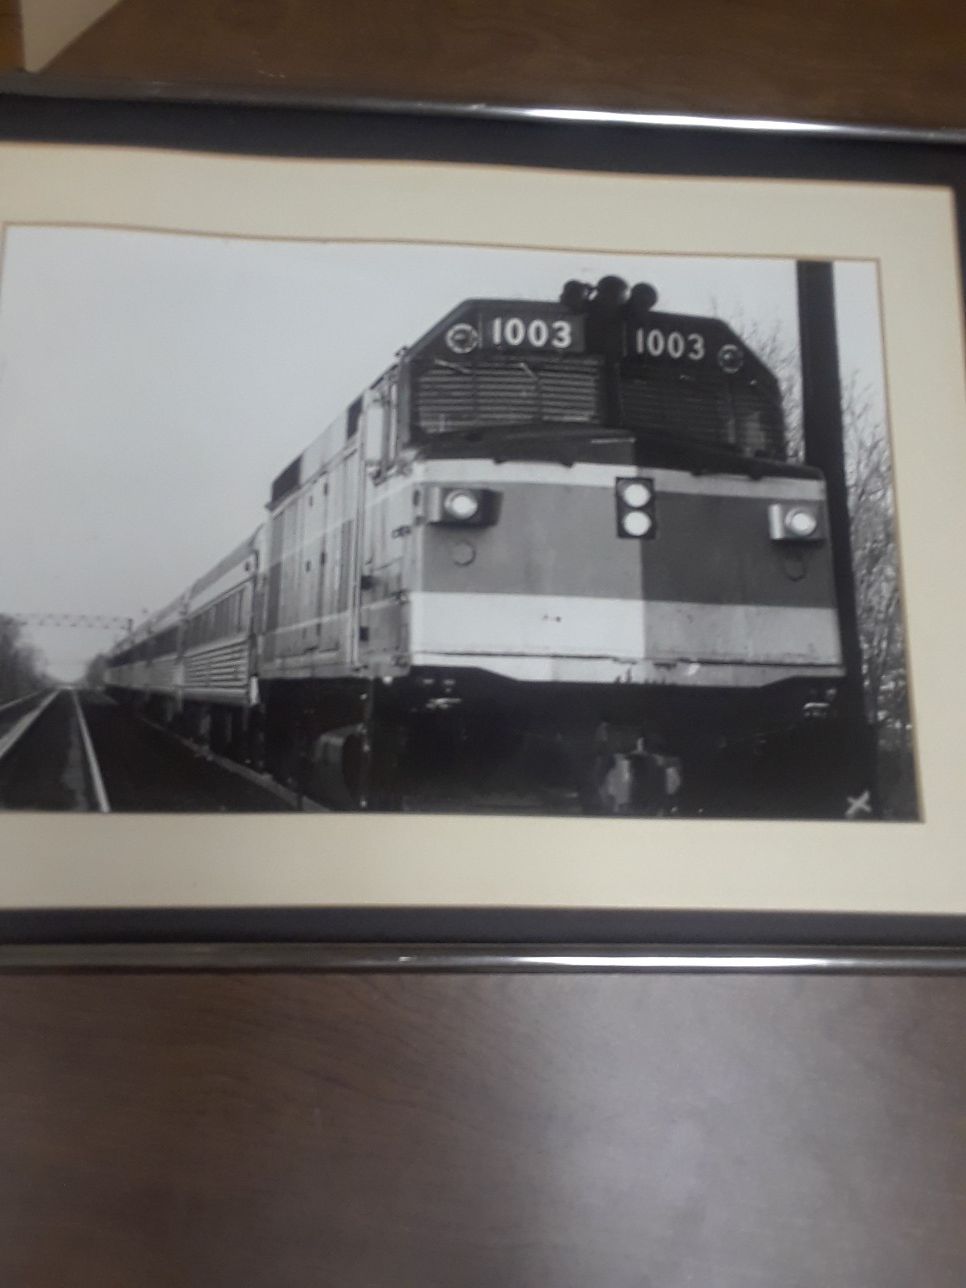 Train, MBTA (Framed Photo)